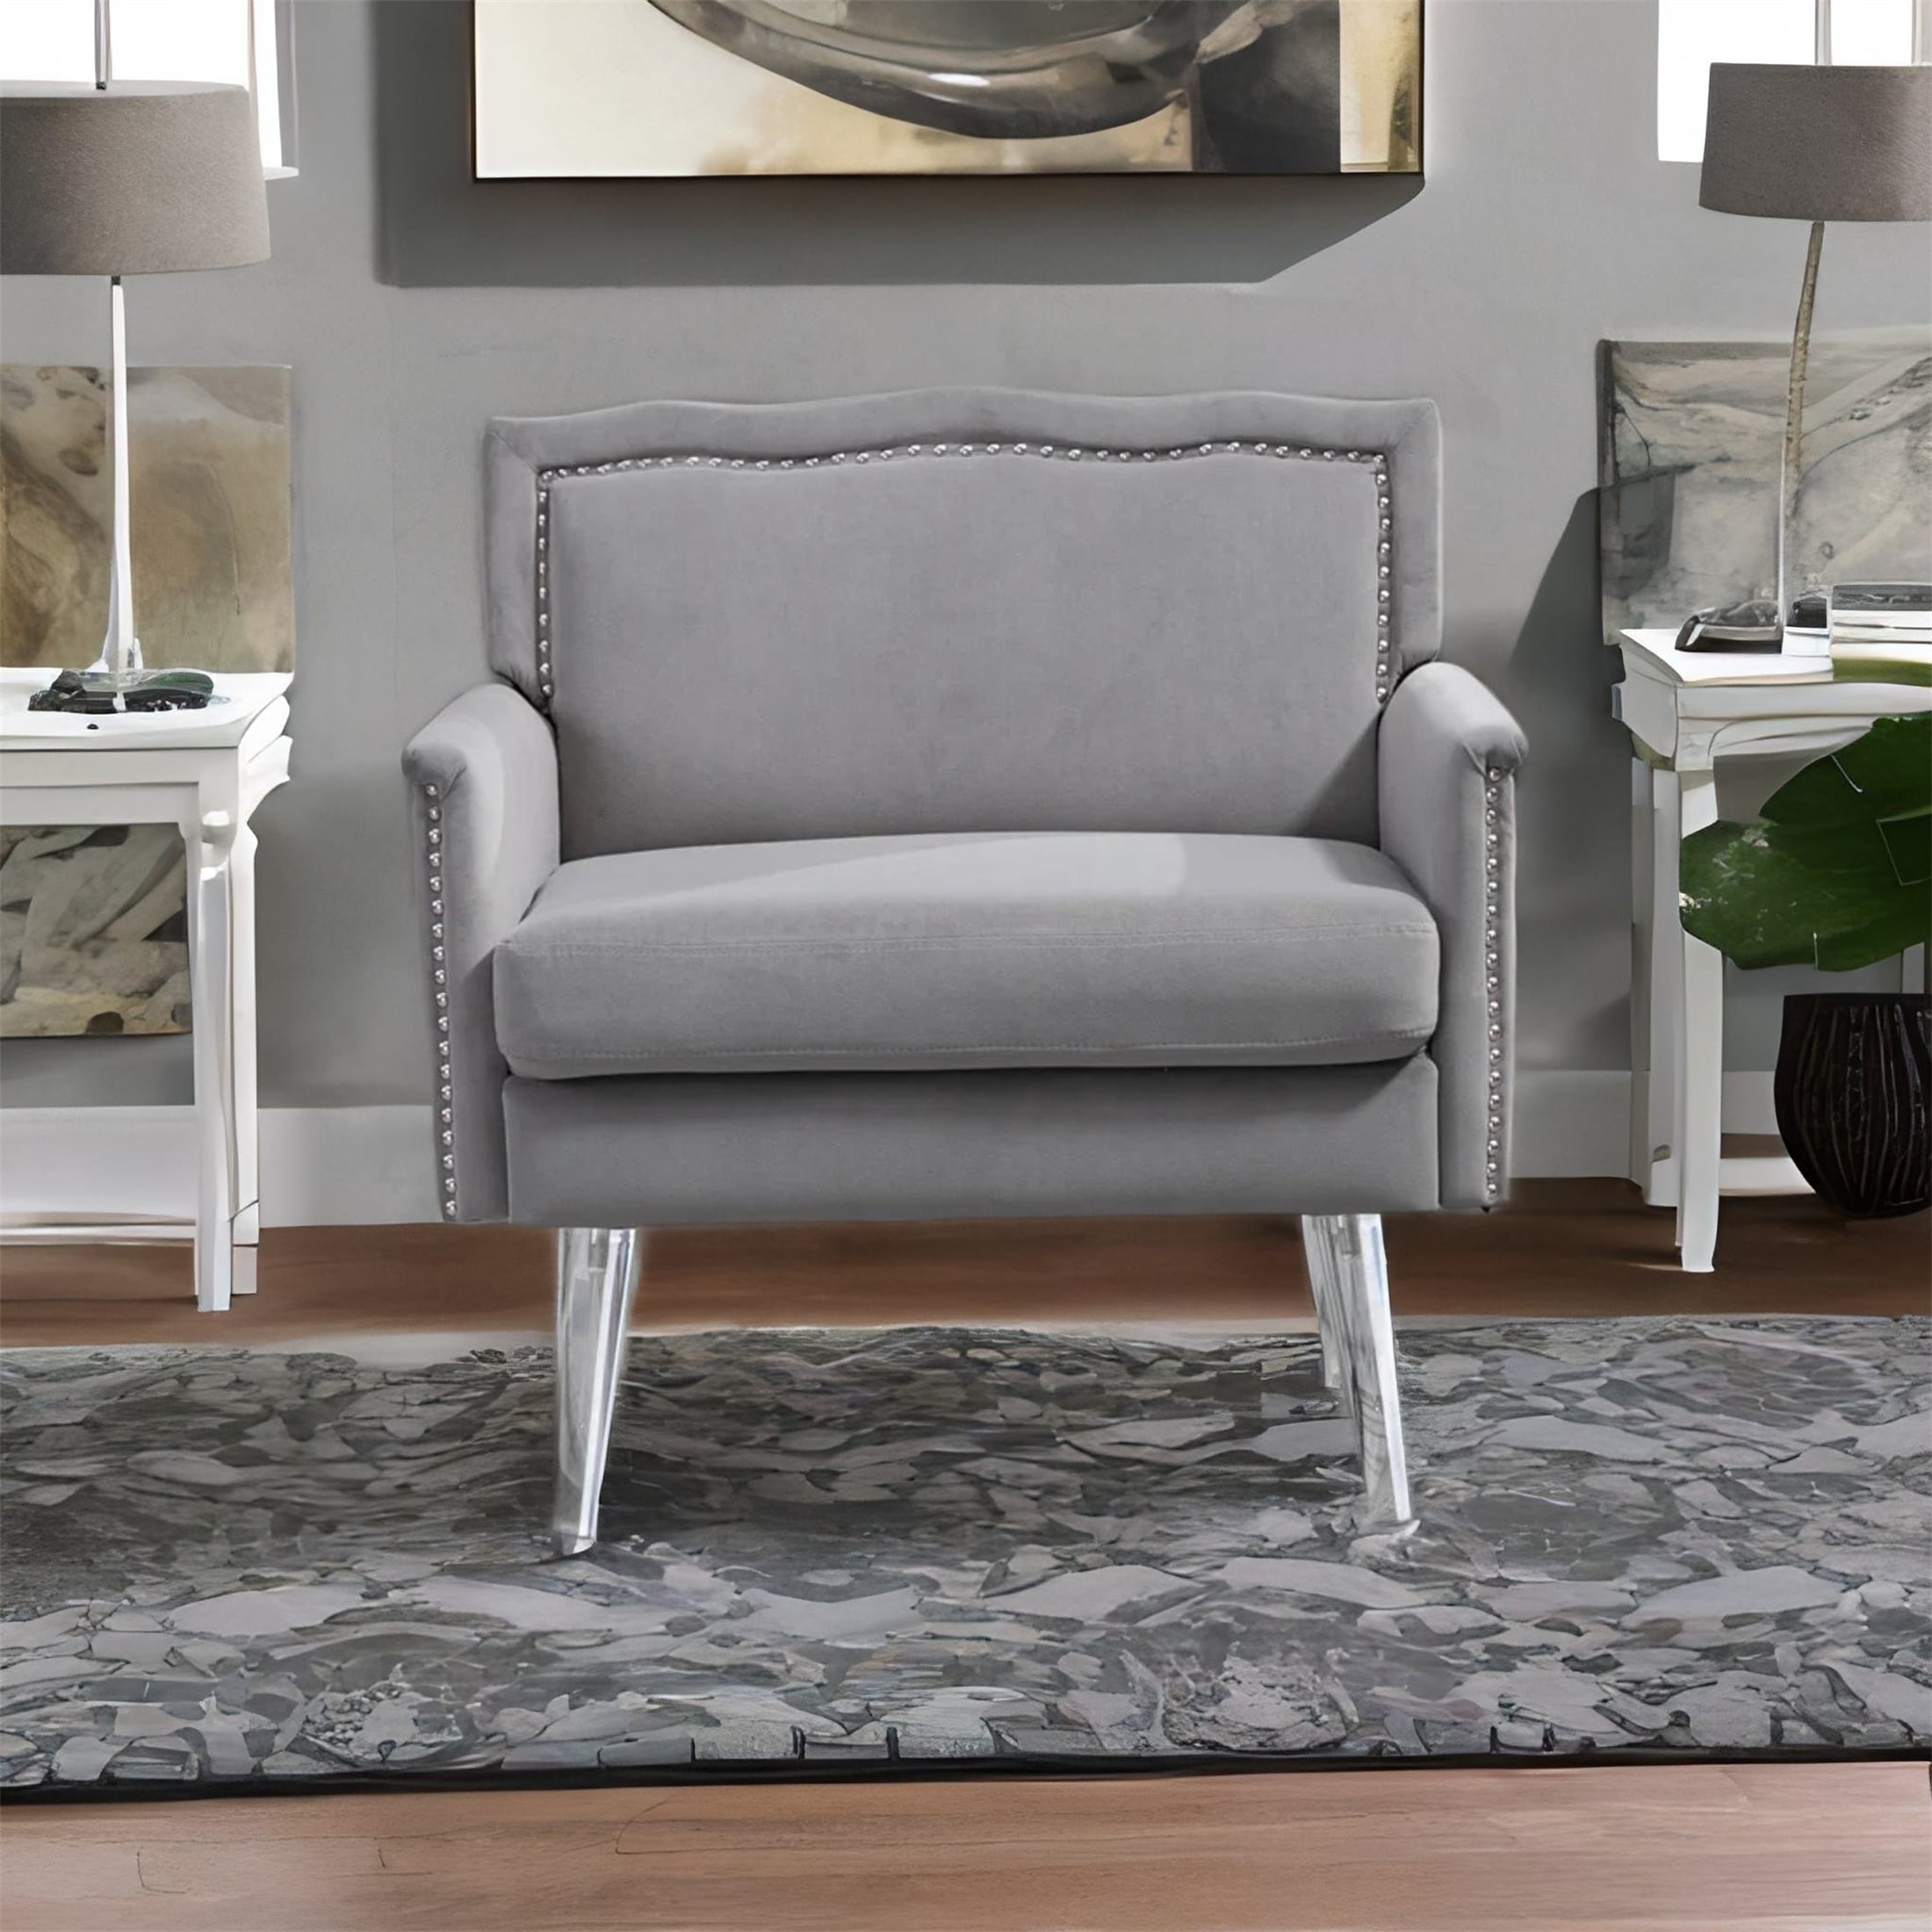 TONWIN Living Room Chair with Acrylic Feet